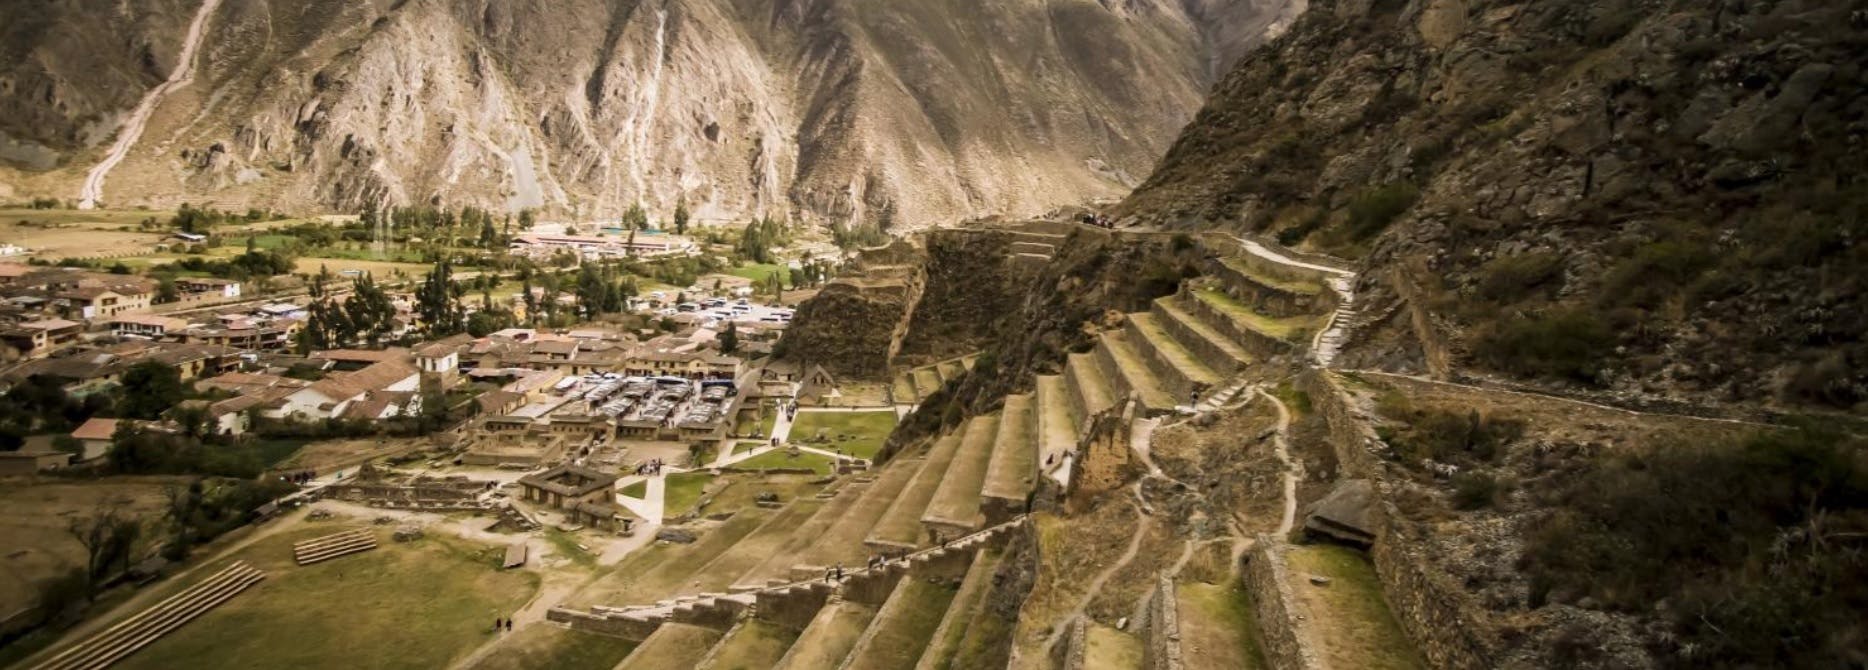 Excursão de dia inteiro ao Vale Sagrado de Cusco: Ollantaytambo, Chinchero e Museu Yucay com almoço